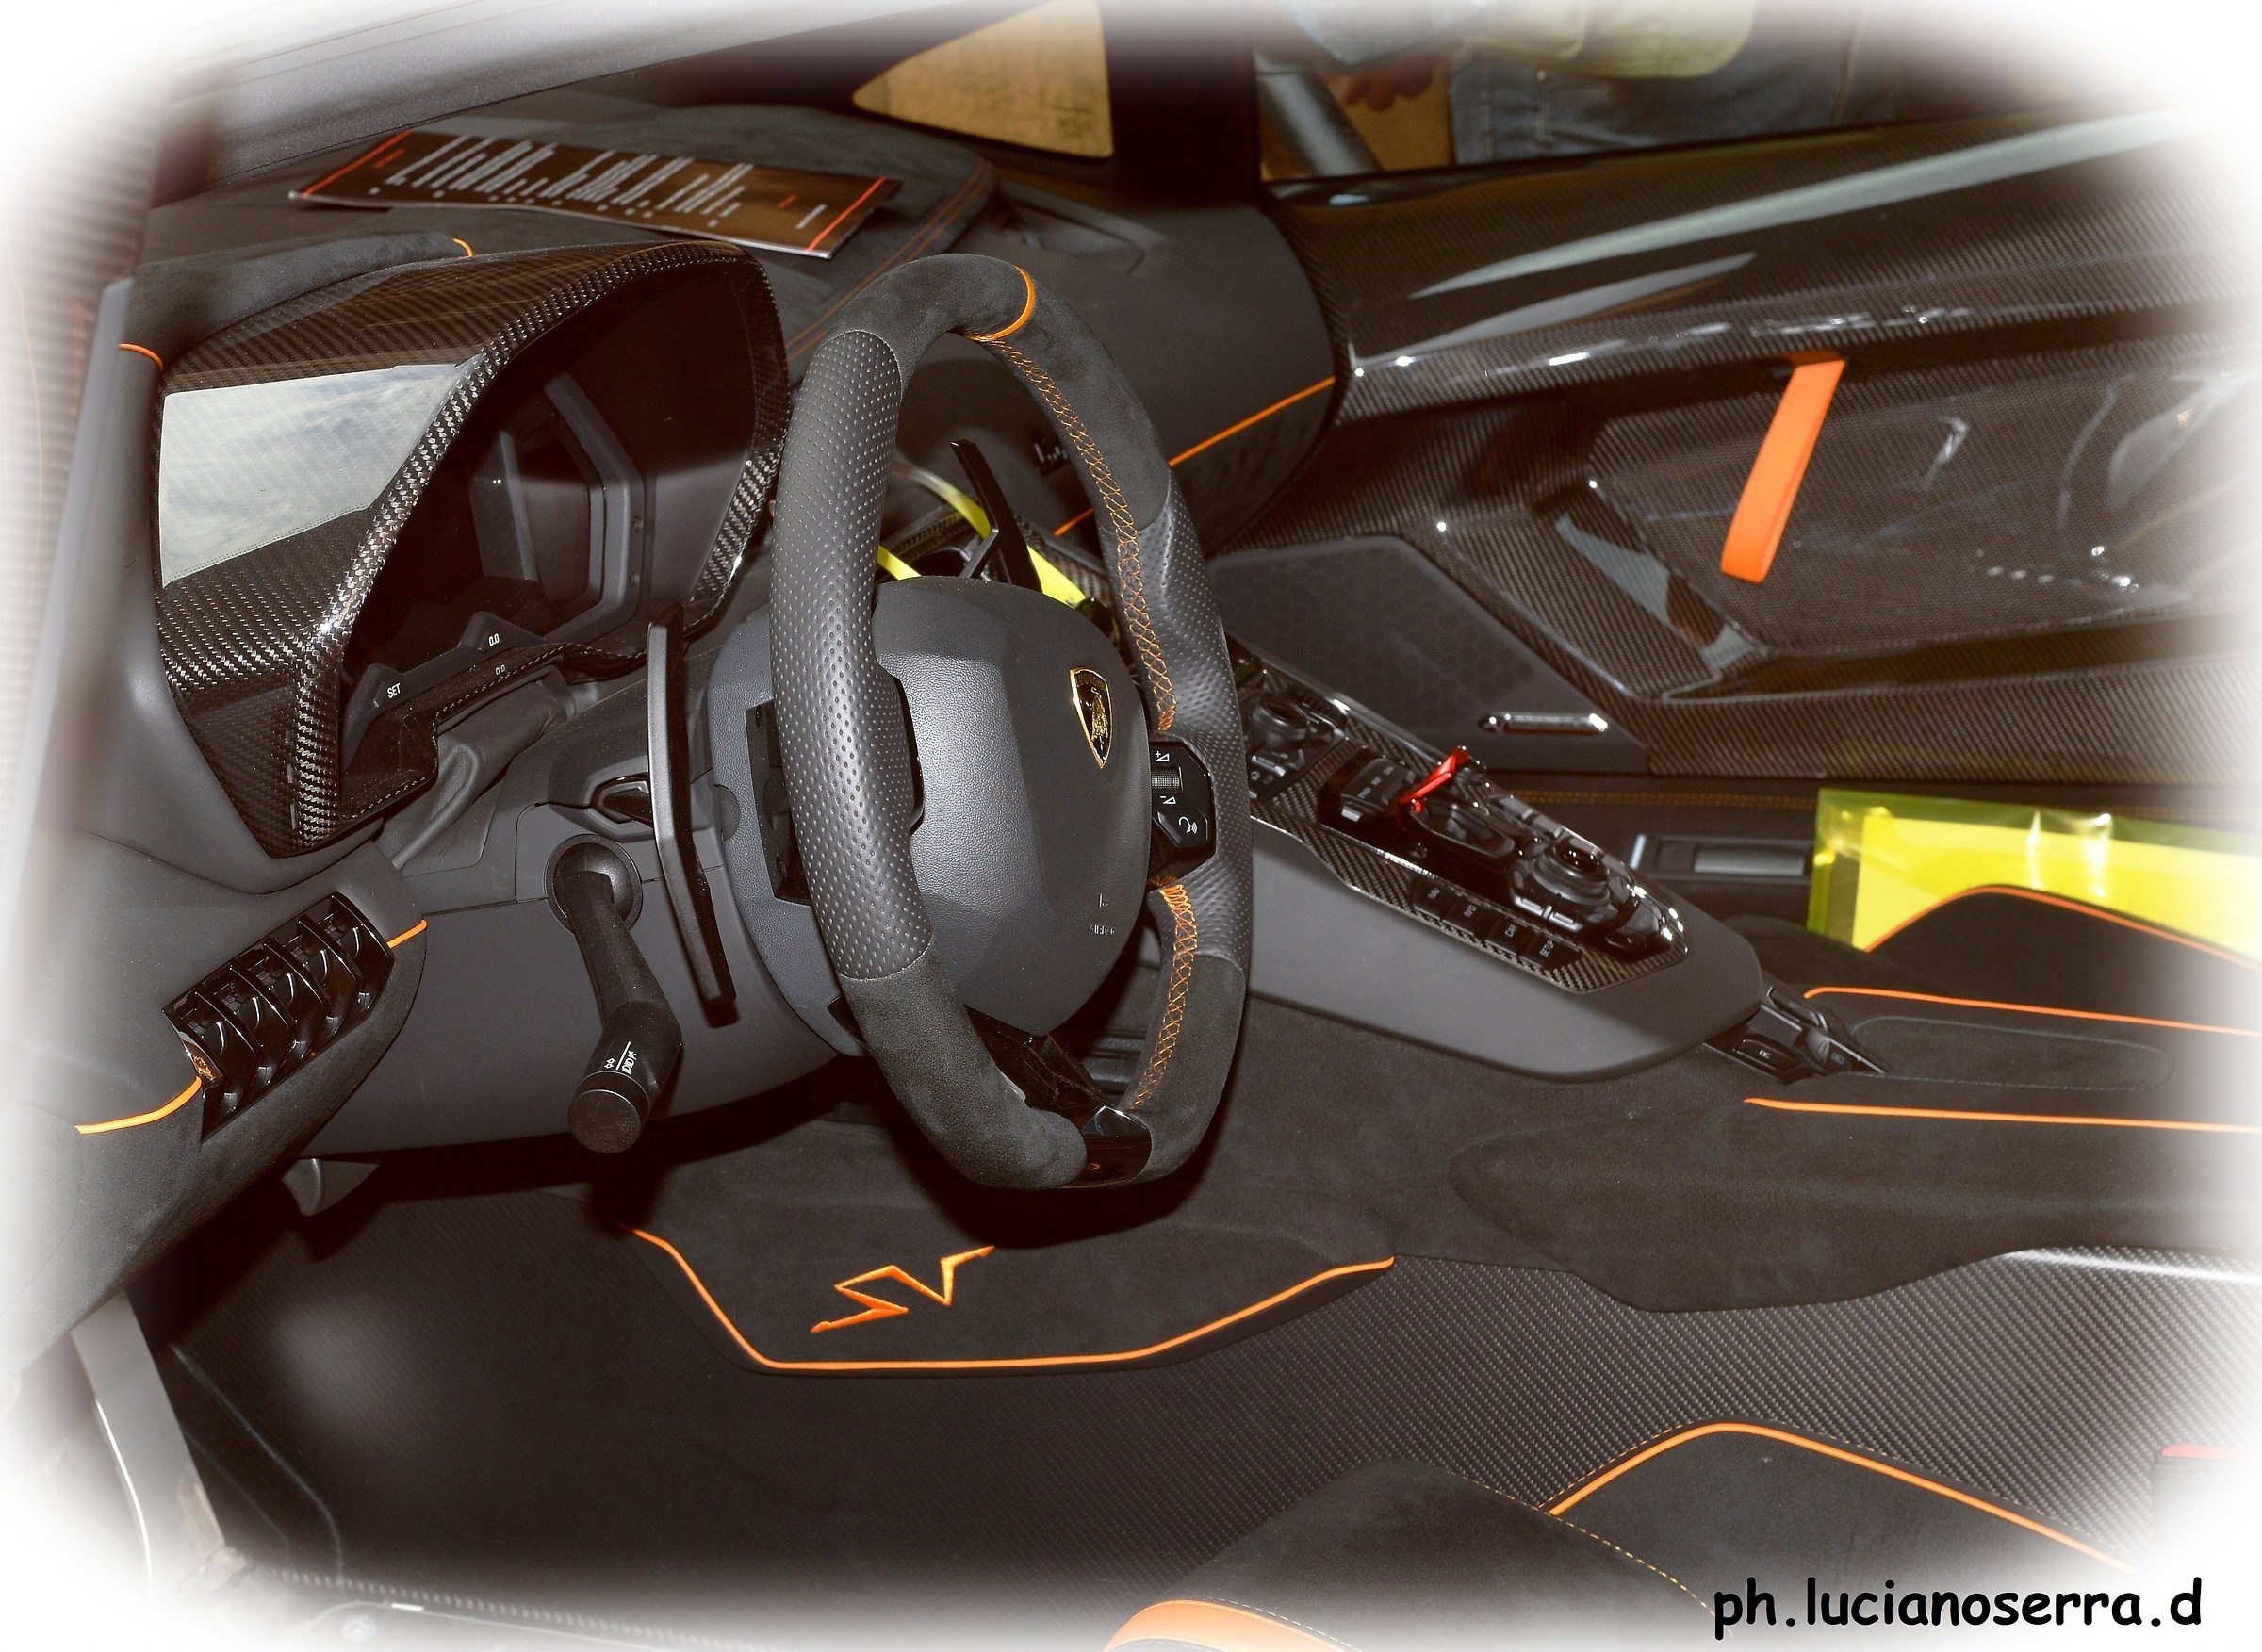 Lamborghini Aventador LP 750-4 SV - 2015... interno...